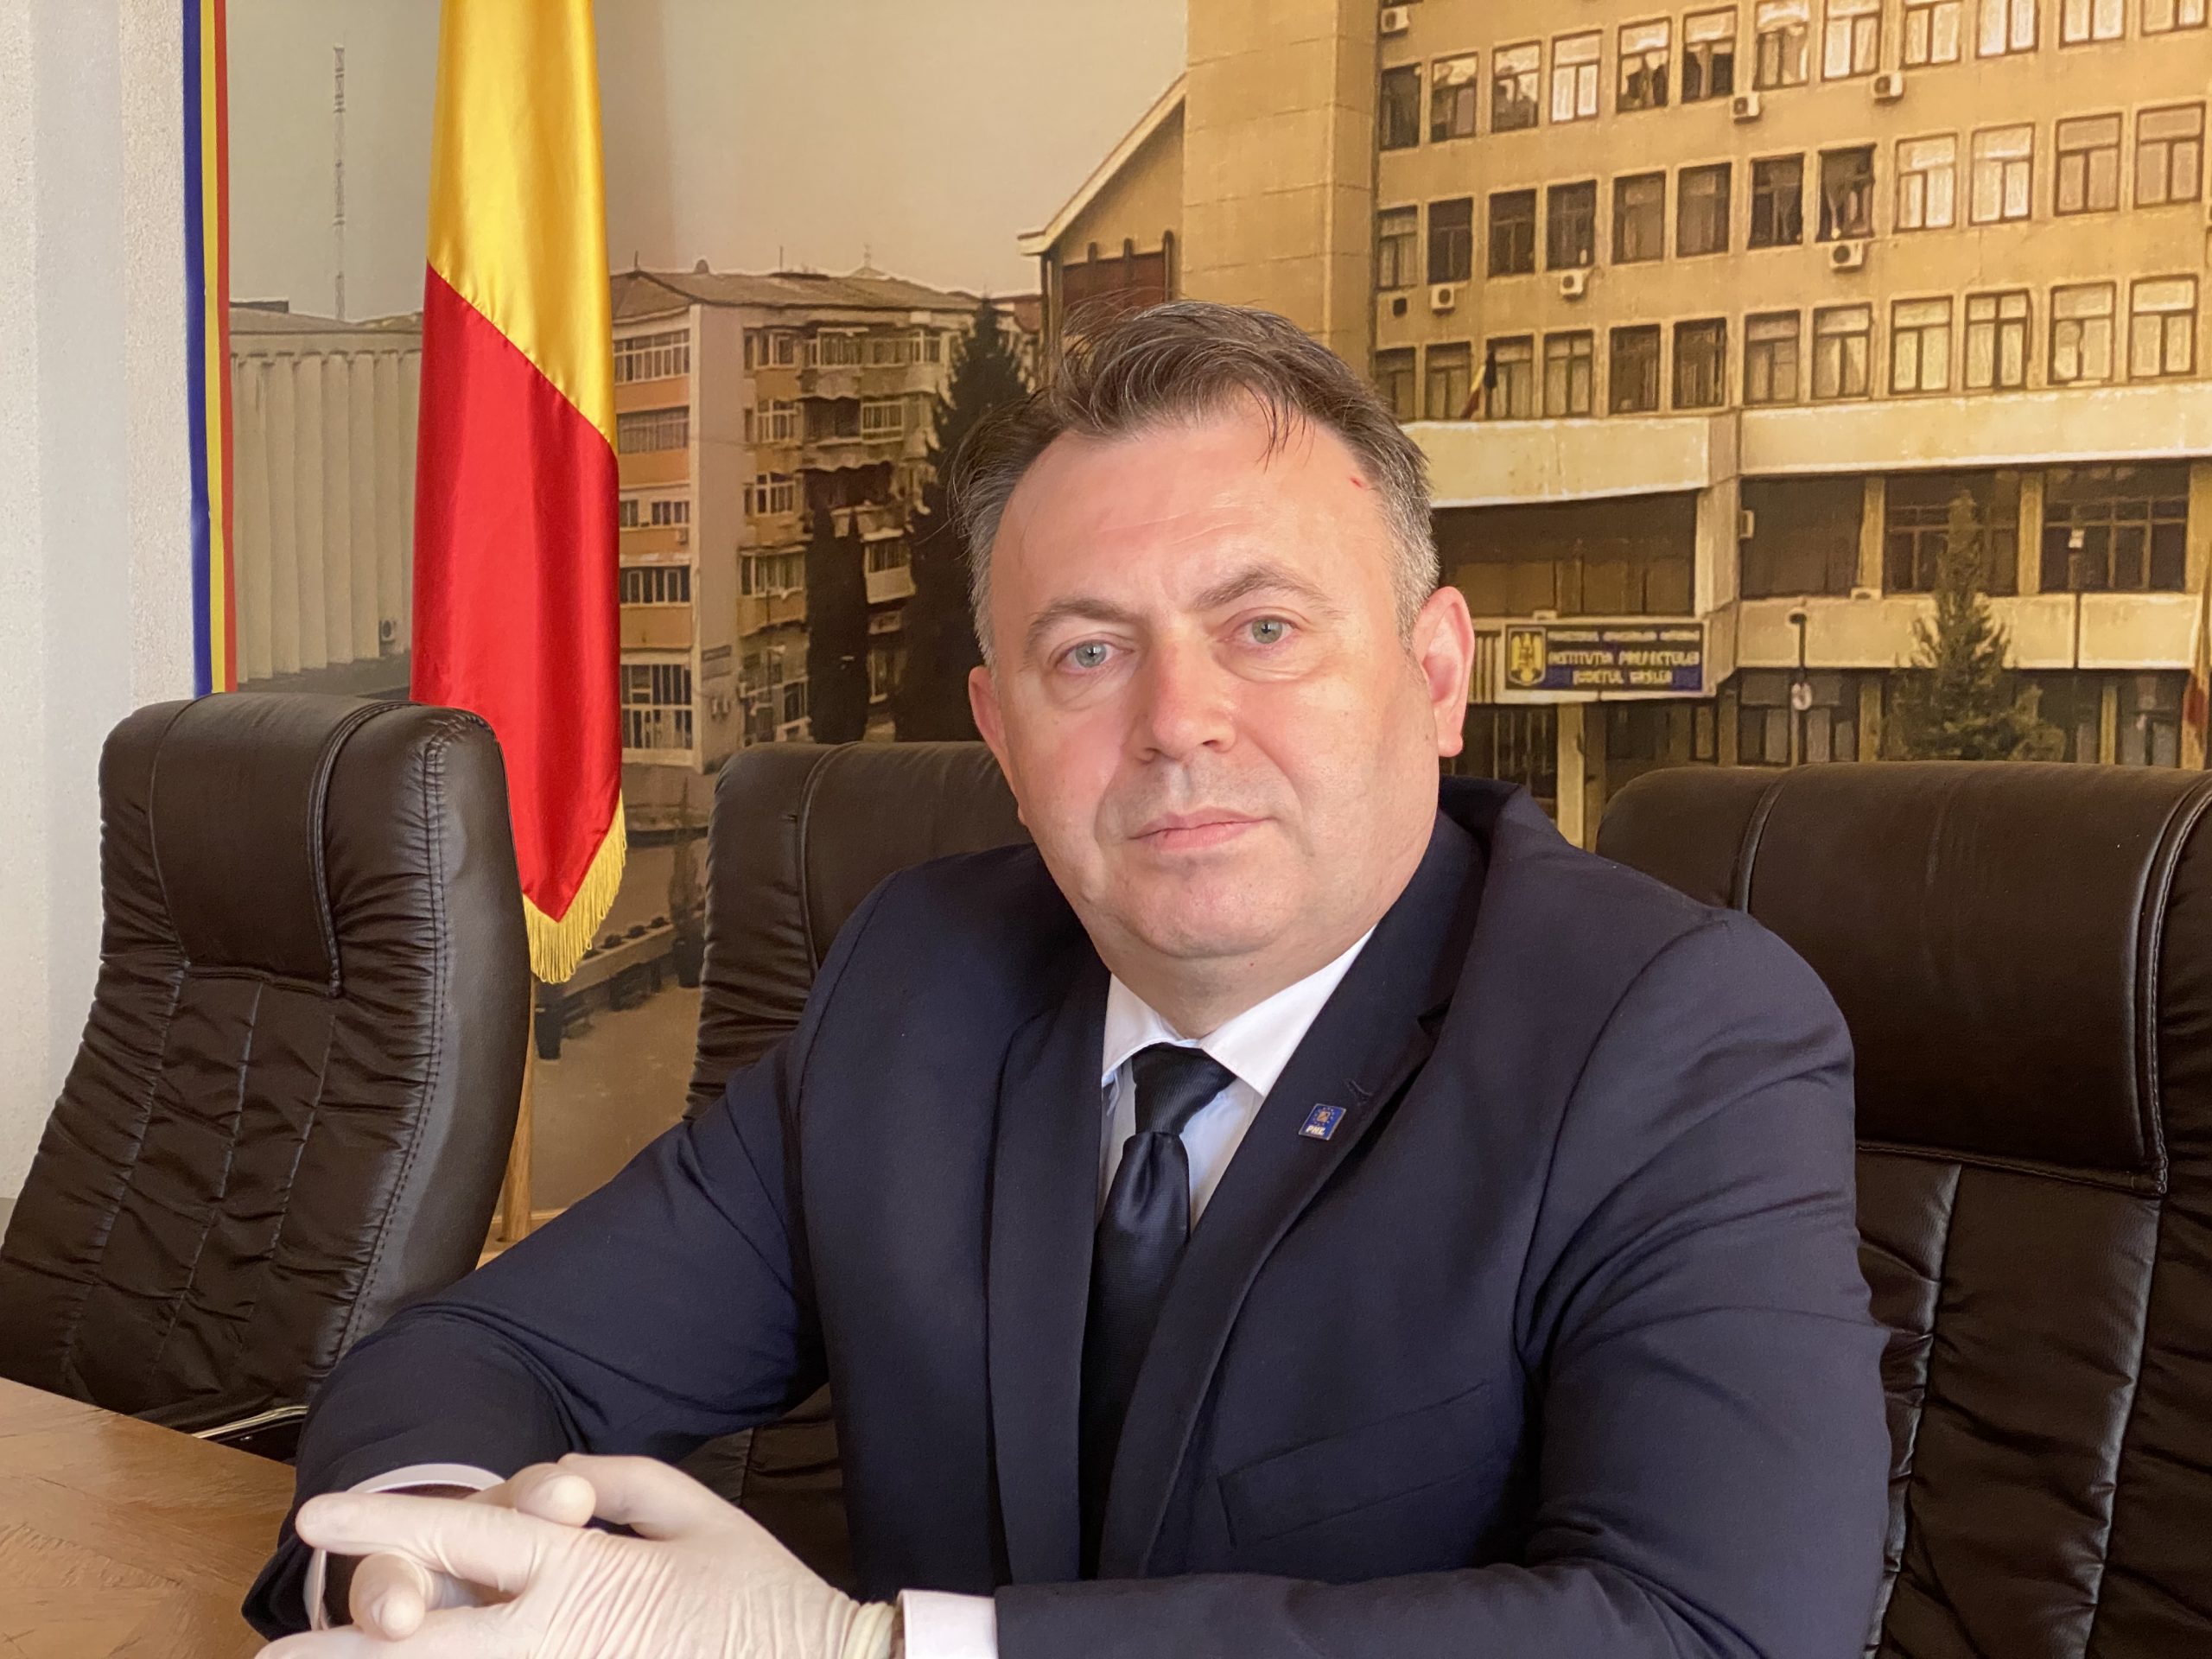 Contestația deciziei BEJ privind broșurile în care Nelu Tătaru era numit ”Ministrul Bolii și al Morții” a fost respinsă de BEC